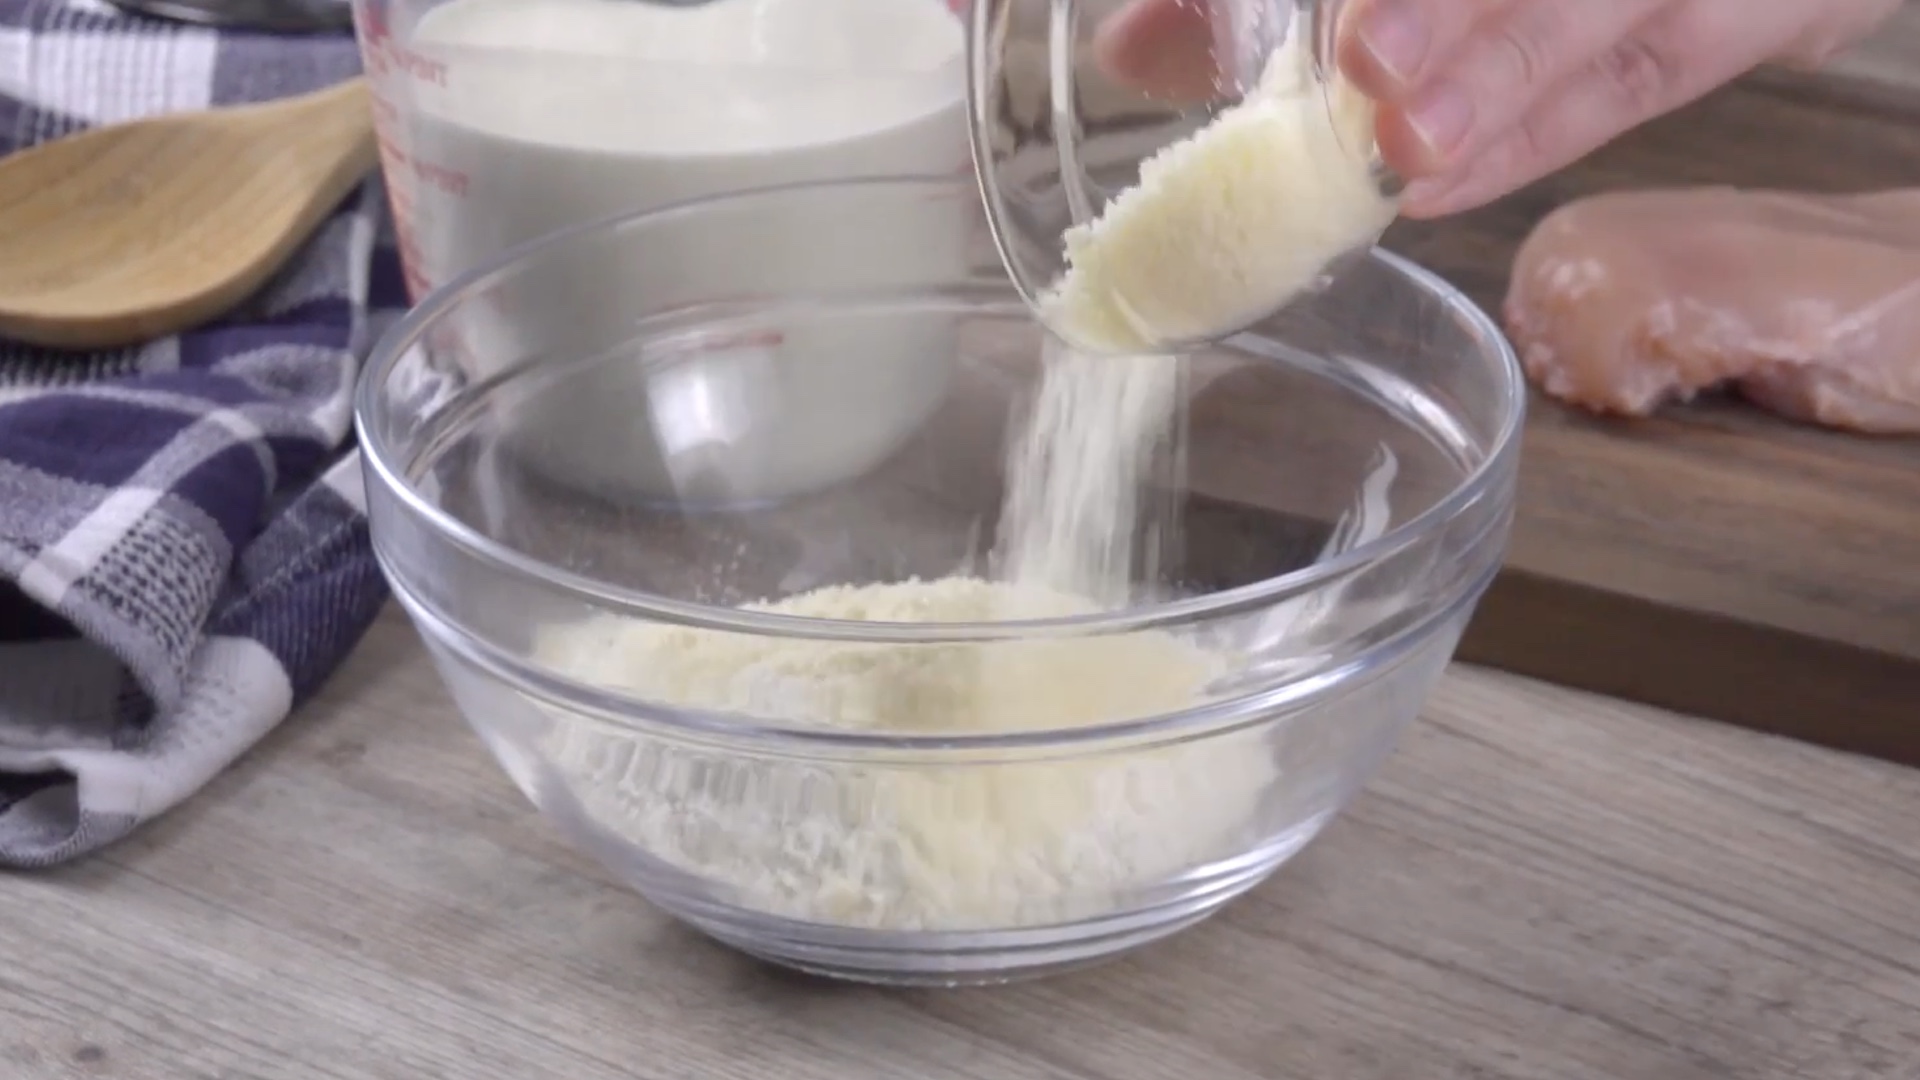 Parmesan wird zusammen mit Mehl in eine glÃ¤serne SchÃ¼ssel gegeben.